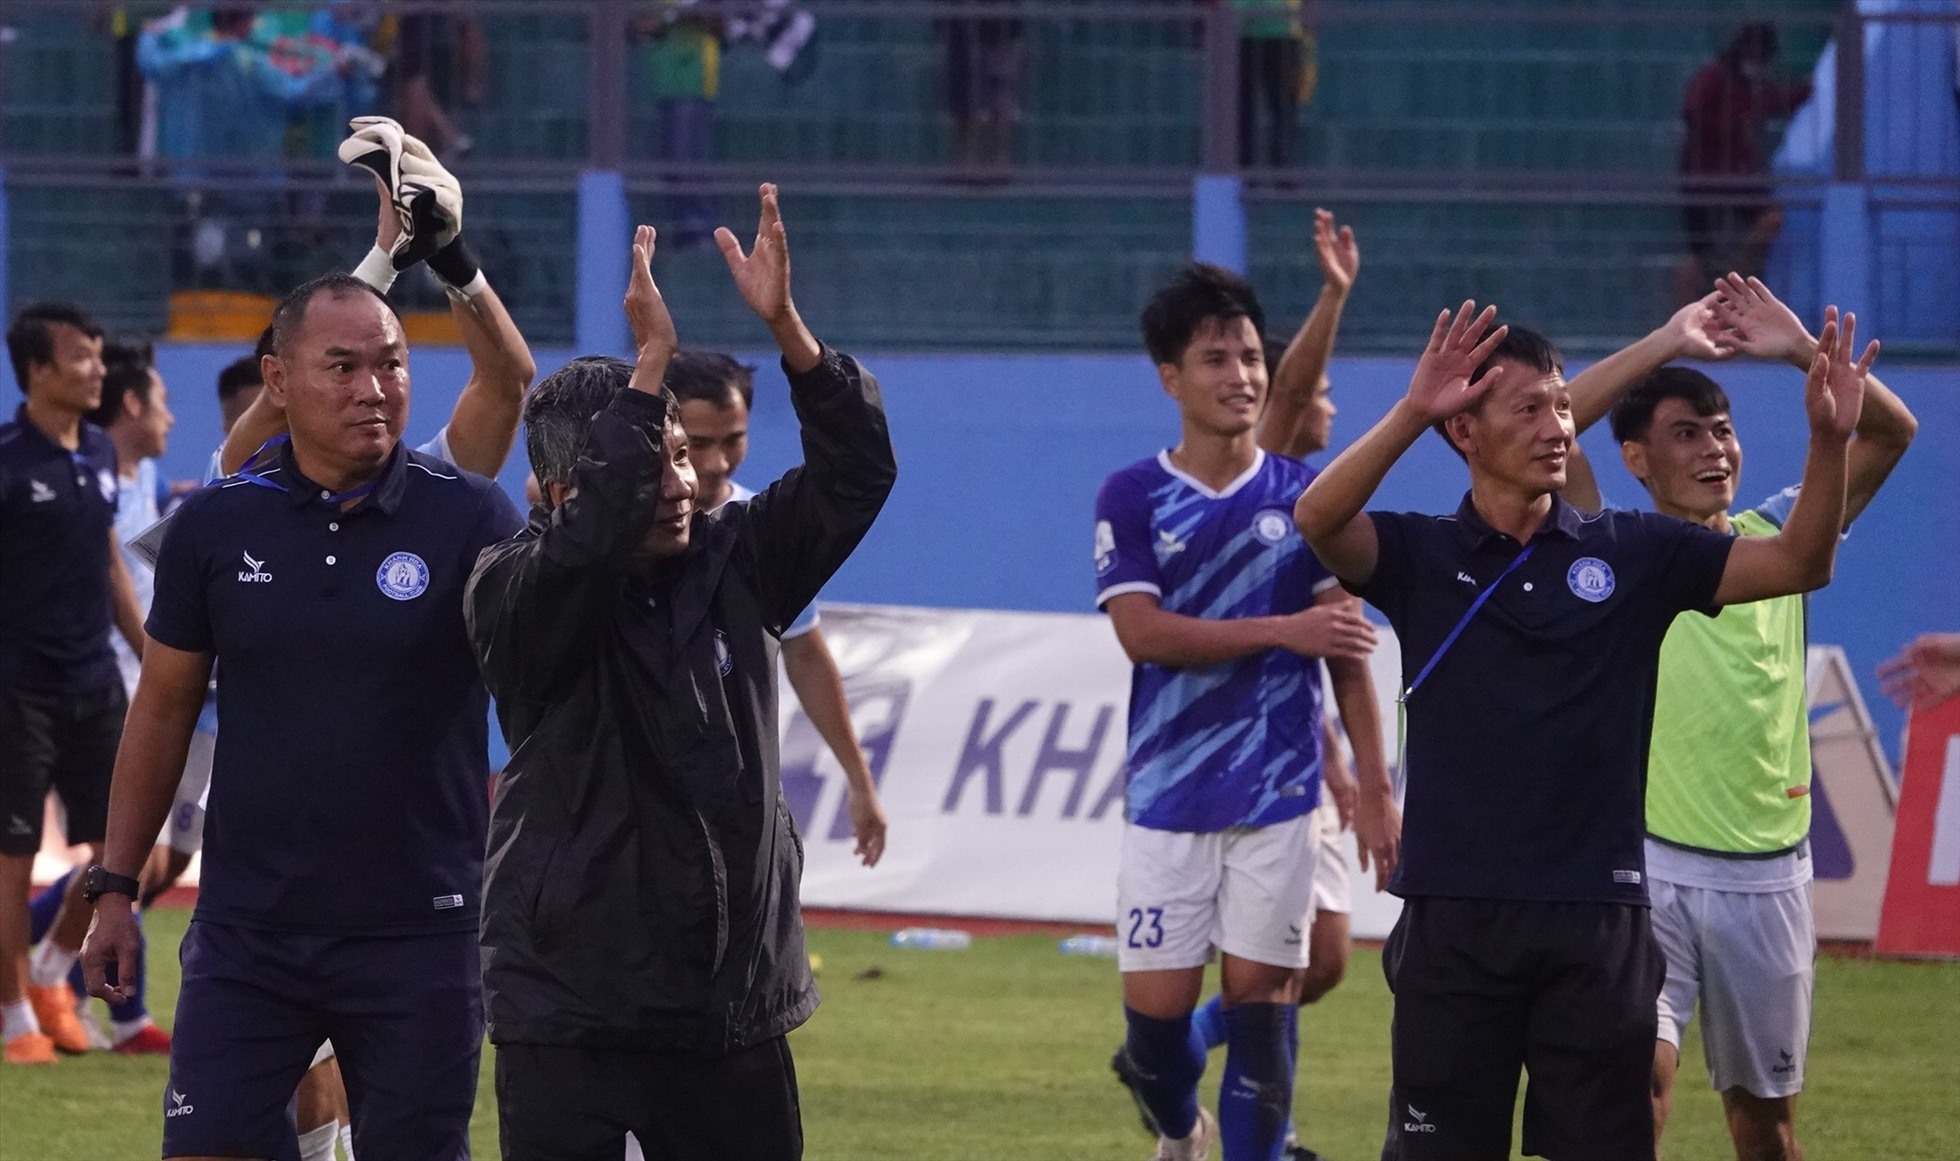 Huấn luyện viên Võ Đình Tân dẫn các cầu thủ một vòng để tri ân cổ động viên nhà. Dưới sự dẫn dắt của ông, Khánh Hòa kết thúc giải với thành tích xuất sắc, khi chỉ thua 2 trận trong suốt mùa giải.